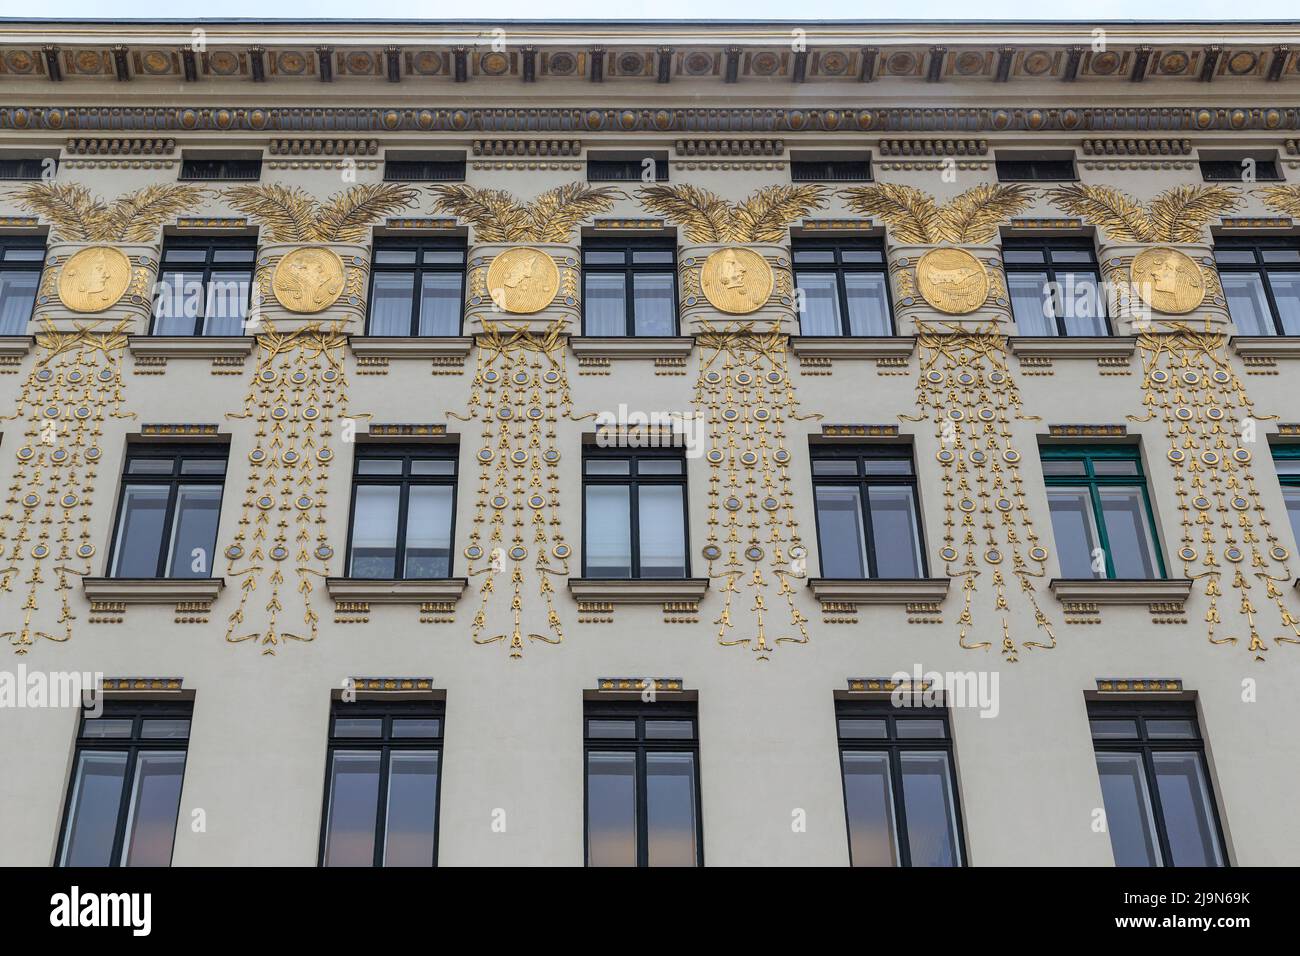 VIENNA, AUSTRIA - 22 MAGGIO 2019: Questi sono i madalloni dorati sulla facciata della Casa con medaglioni (architetto otto Wagner). Foto Stock